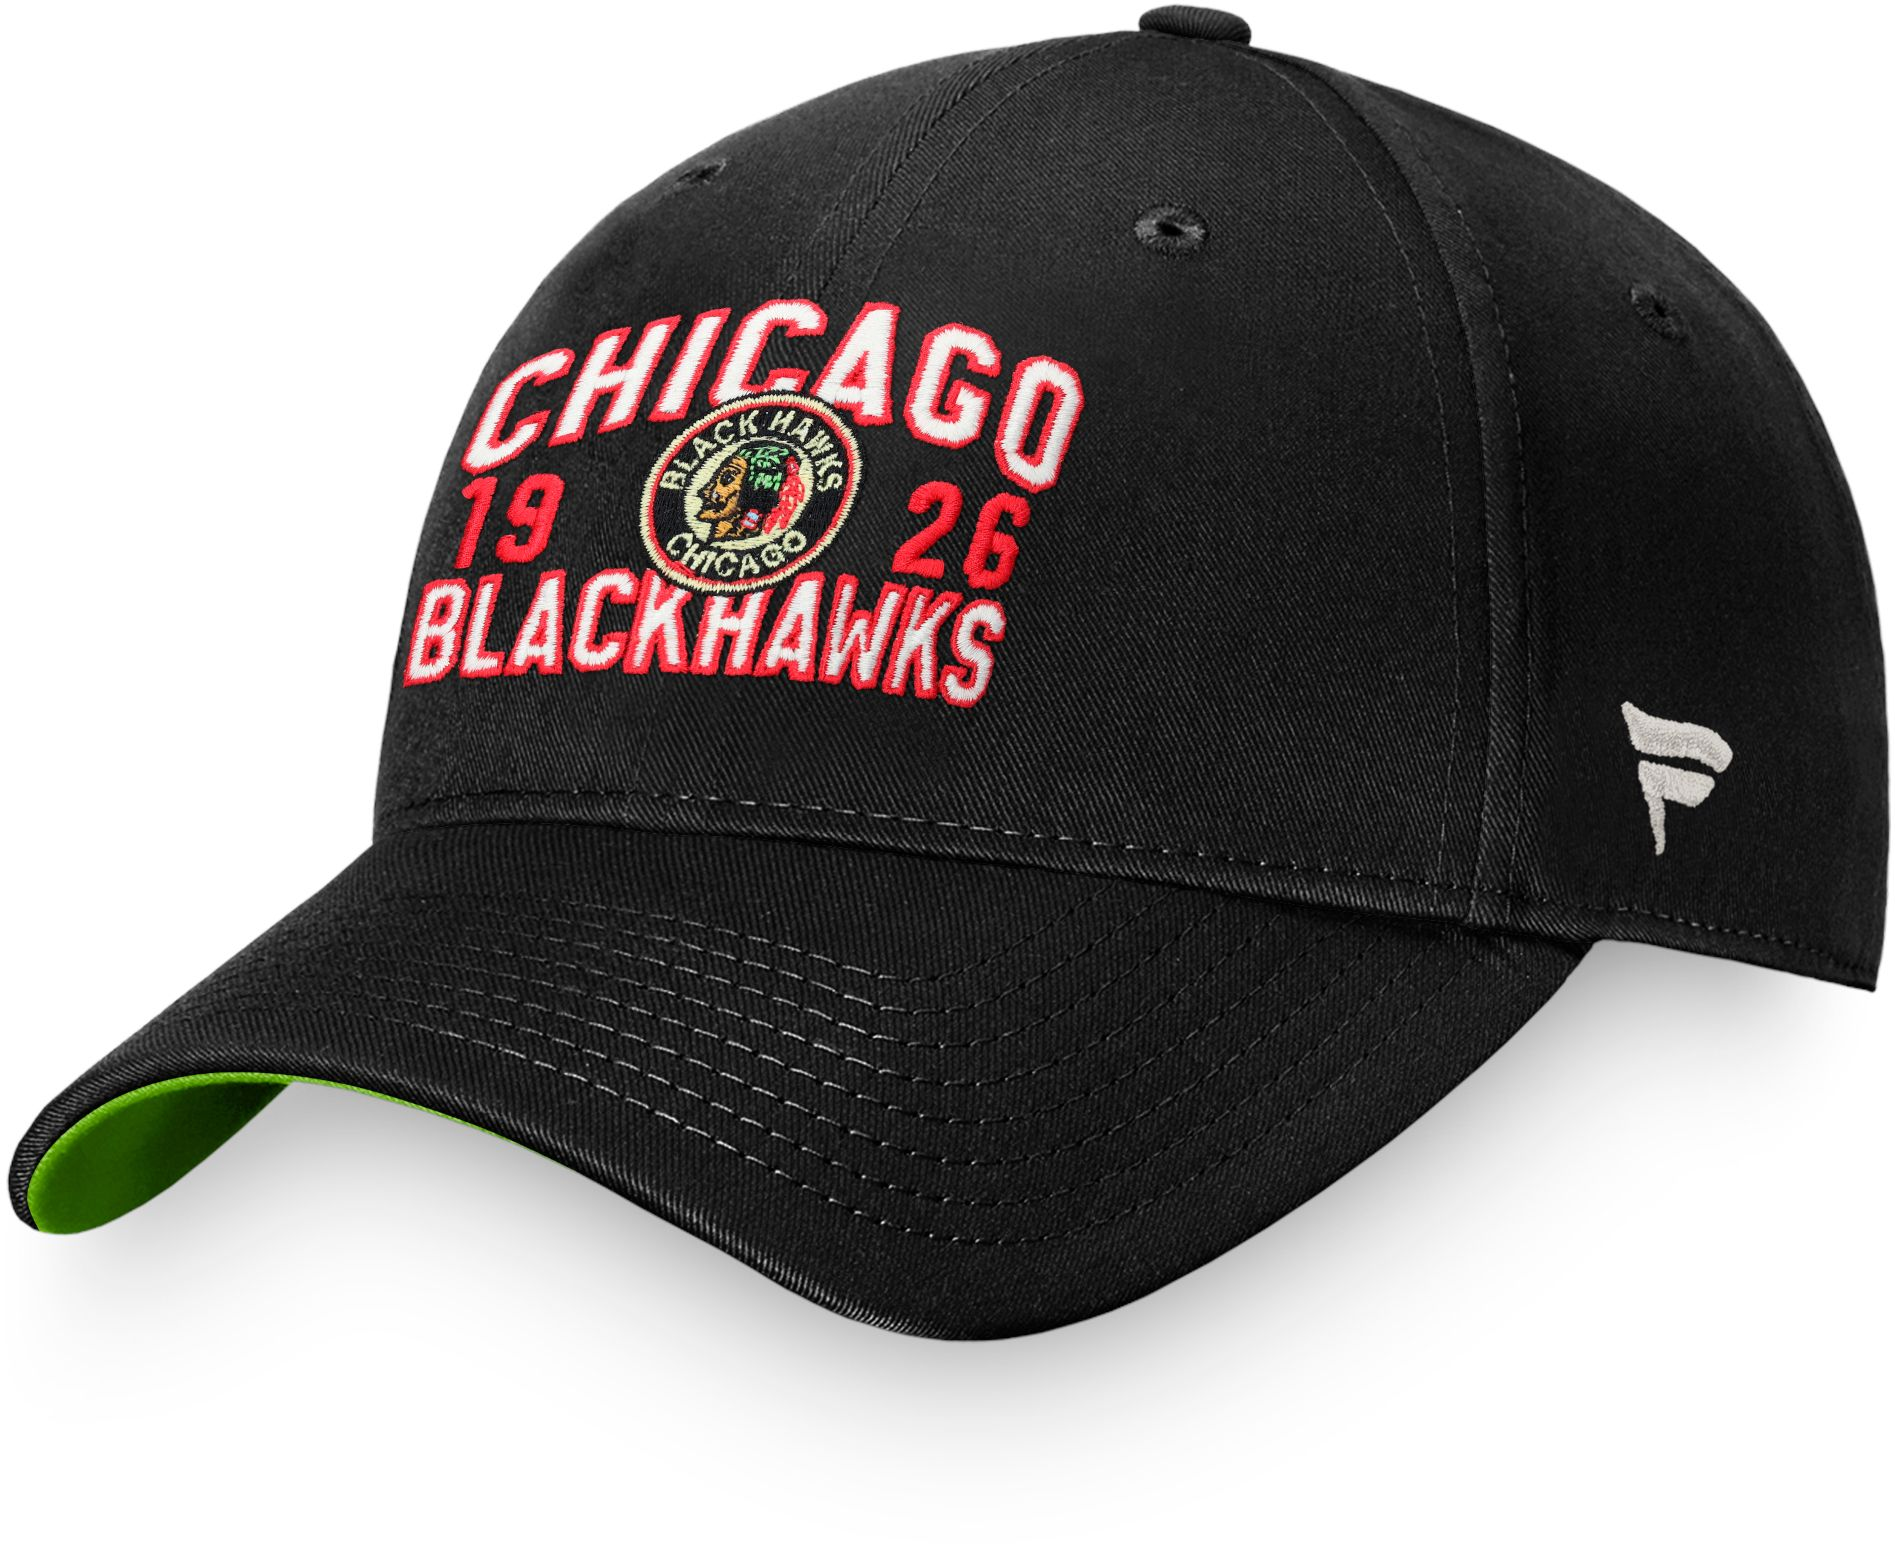 NHL Chicago Blackhawks Vintage Unstructured Adjustable Hat, Men's, Black